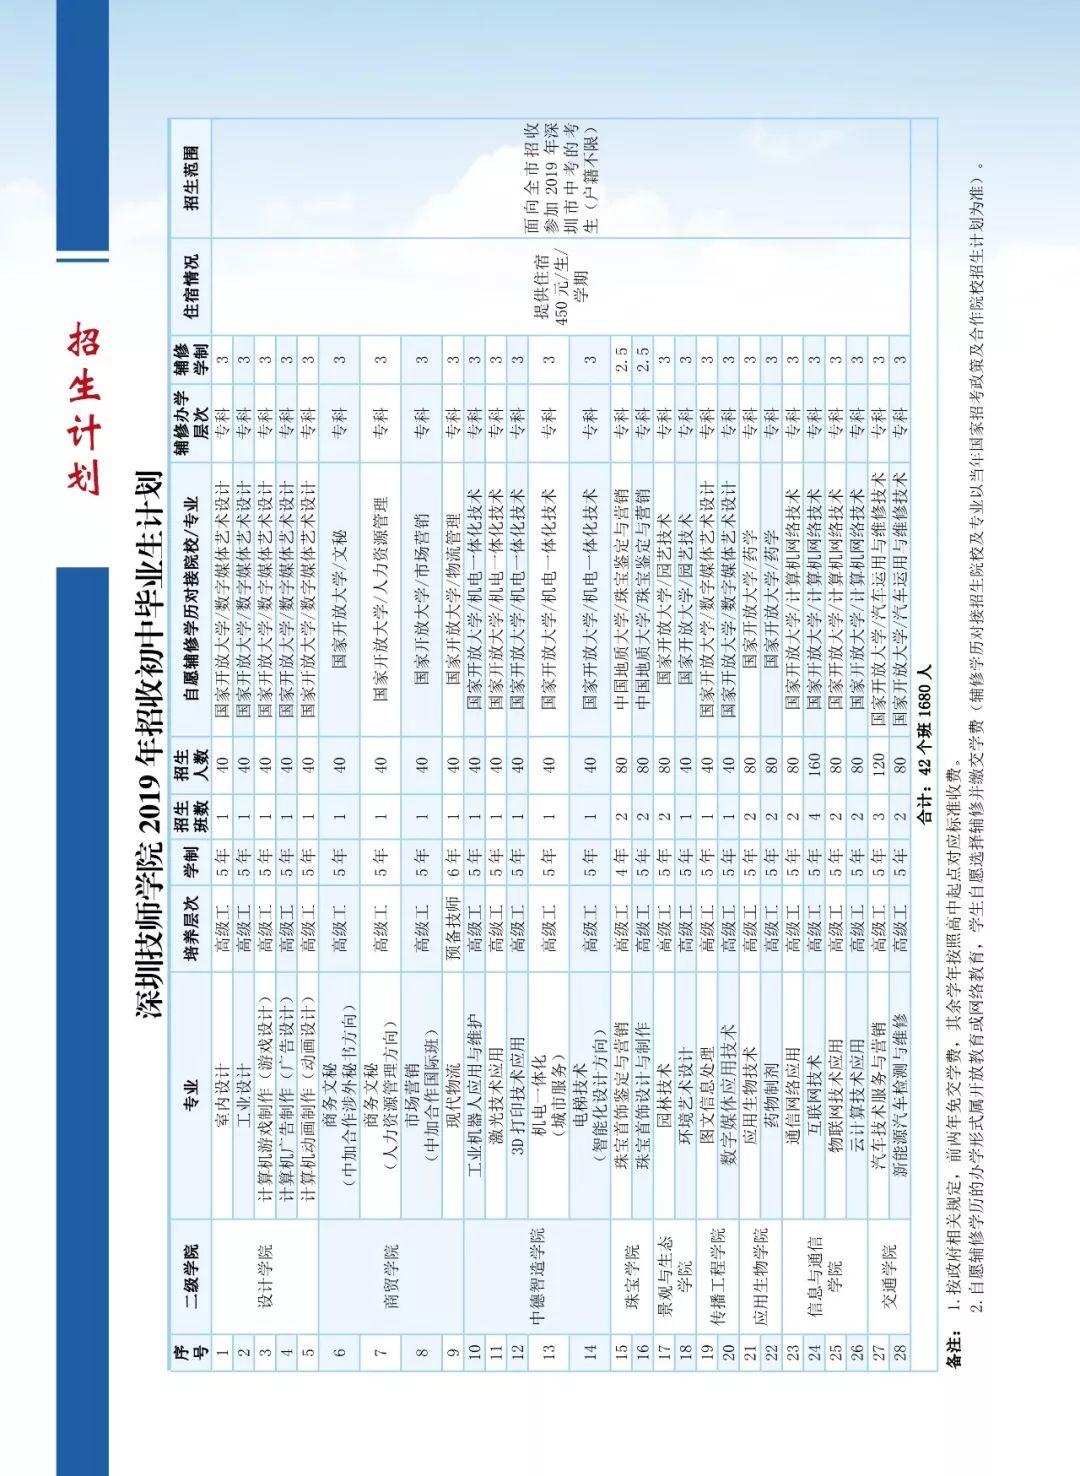 深圳技师学院2019年招生简章（印刷版）